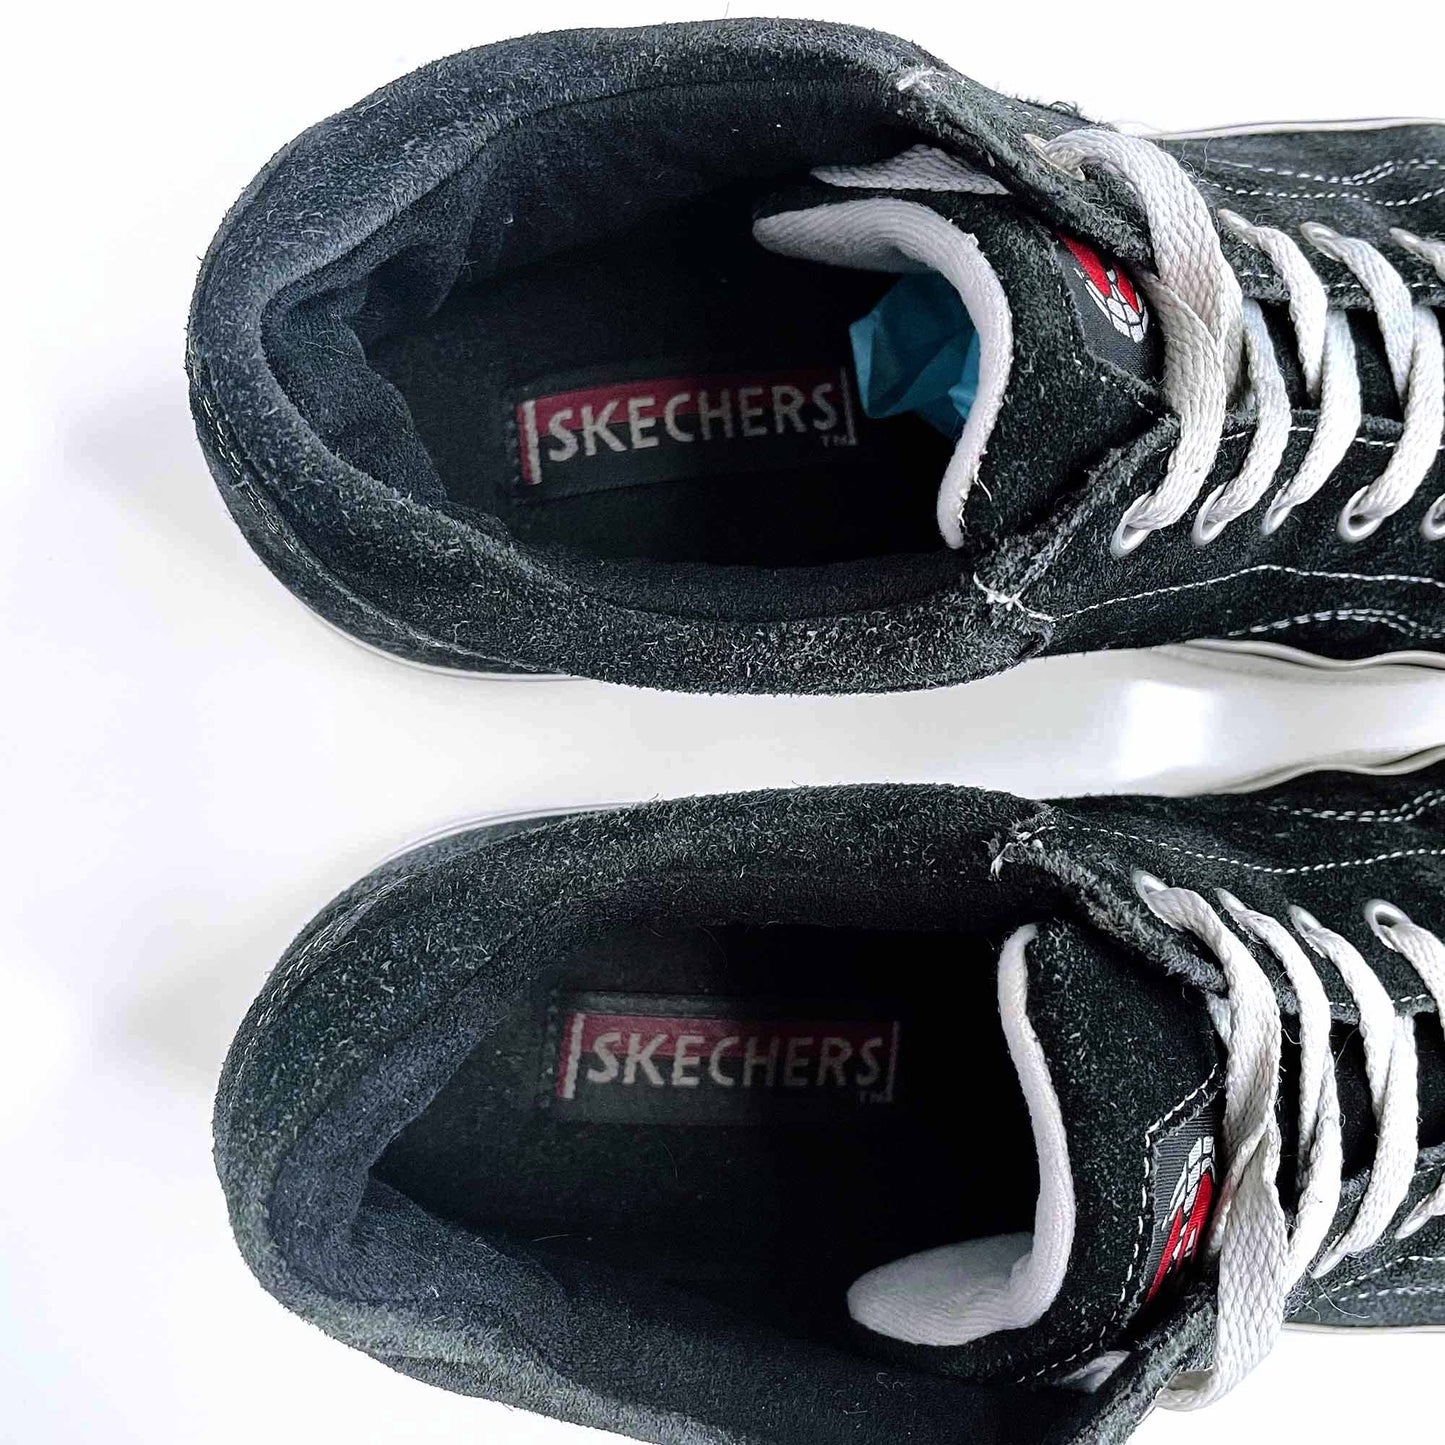 skechers heartbeat softy suede heeled y2k sneakers - size 8.5